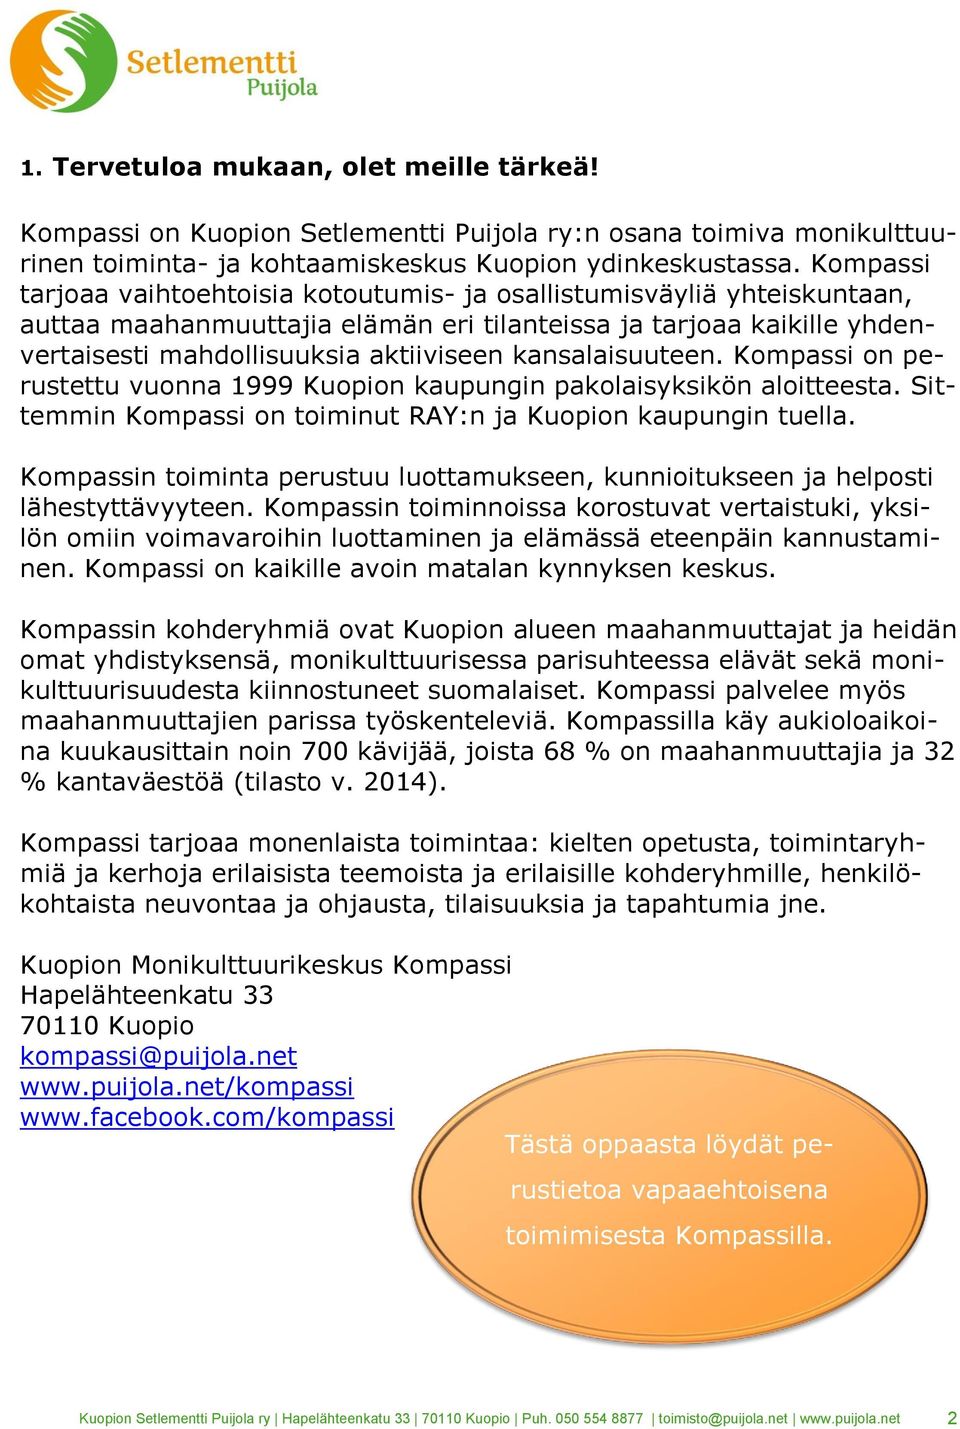 kansalaisuuteen. Kompassi on perustettu vuonna 1999 Kuopion kaupungin pakolaisyksikön aloitteesta. Sittemmin Kompassi on toiminut RAY:n ja Kuopion kaupungin tuella.